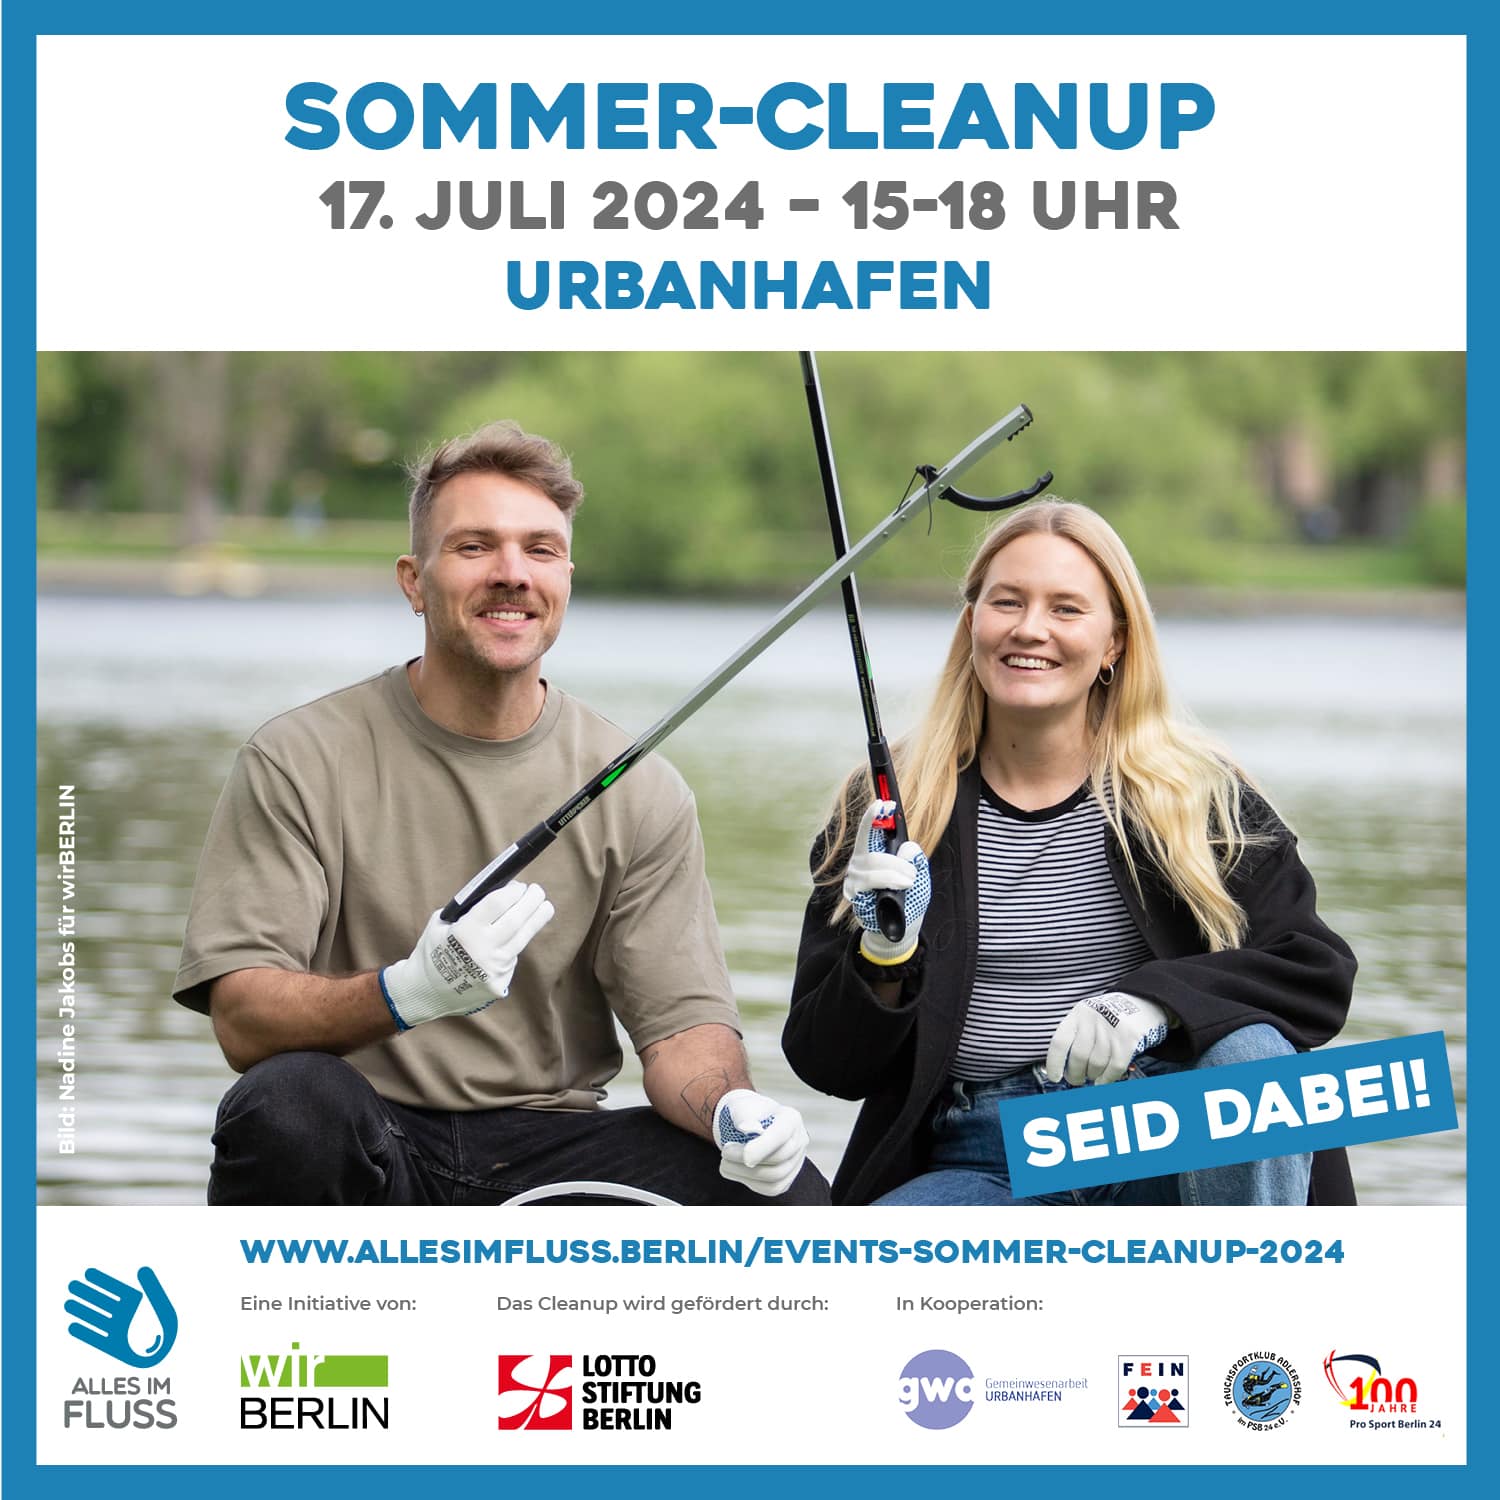 Grafik für das Sommer-Cleanup am 17.07. am Urbanhafen